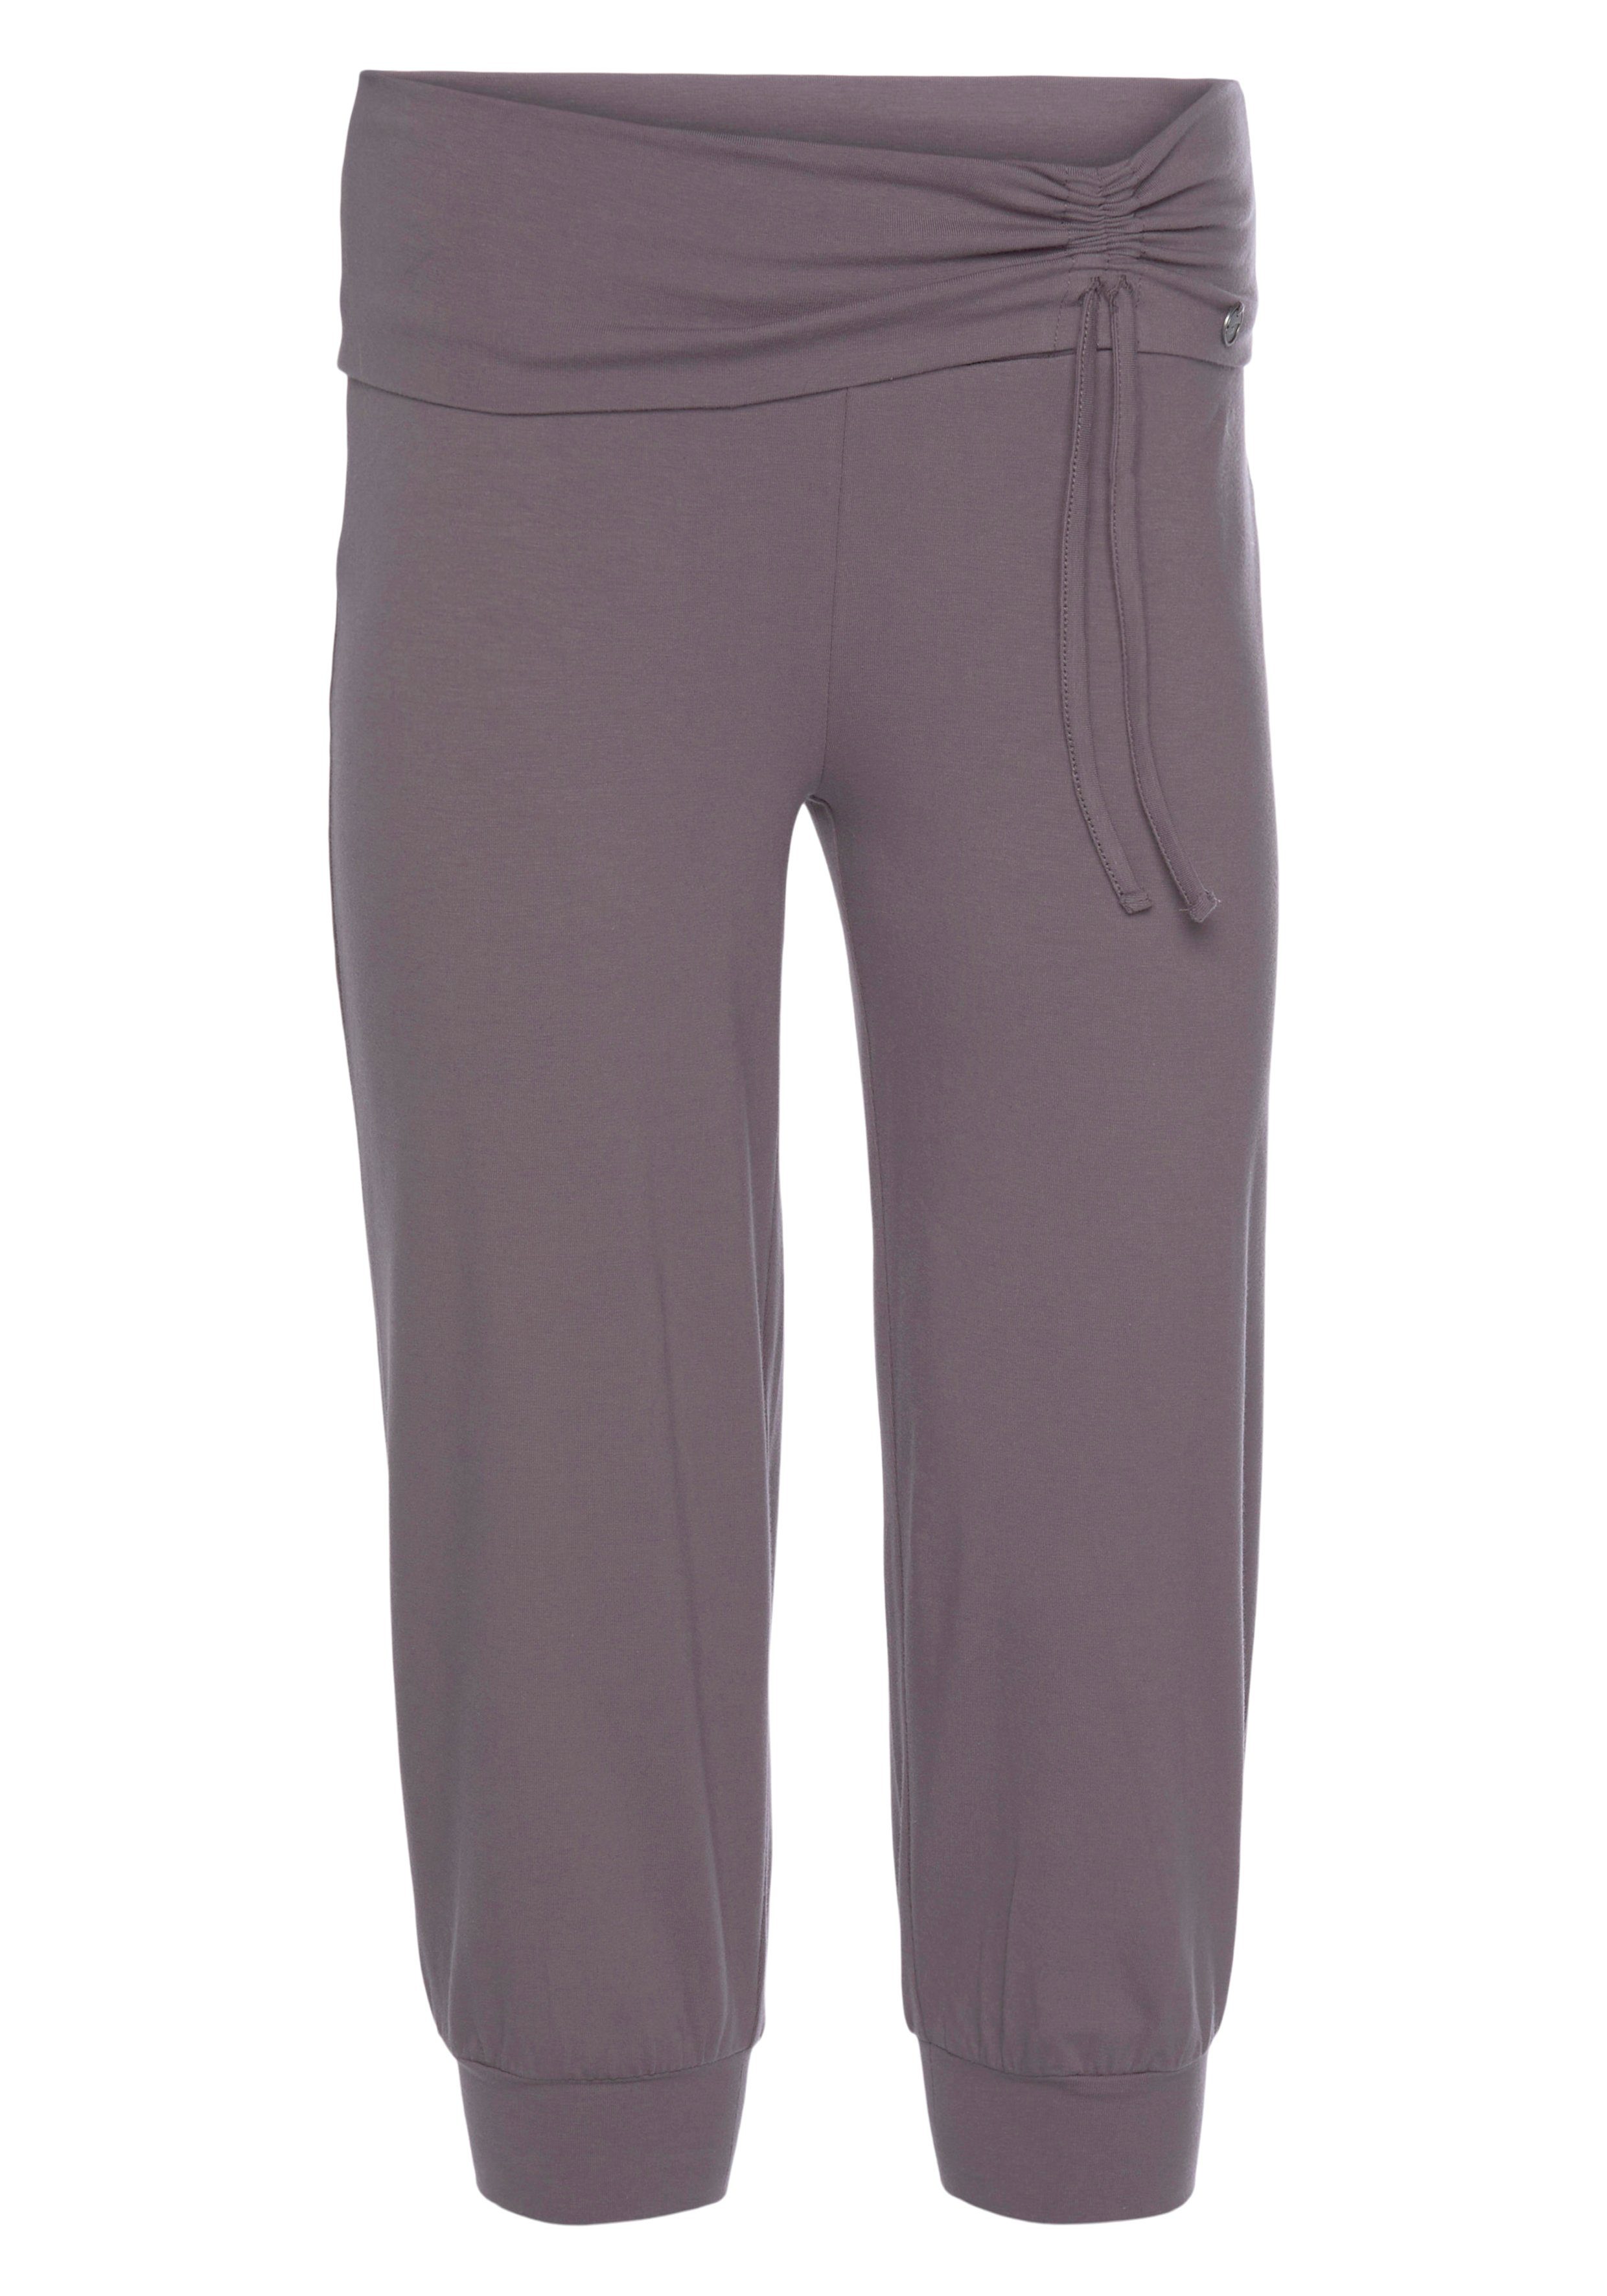 Yogahose Ocean - Soulwear 3/4 Pants Yoga Sportswear